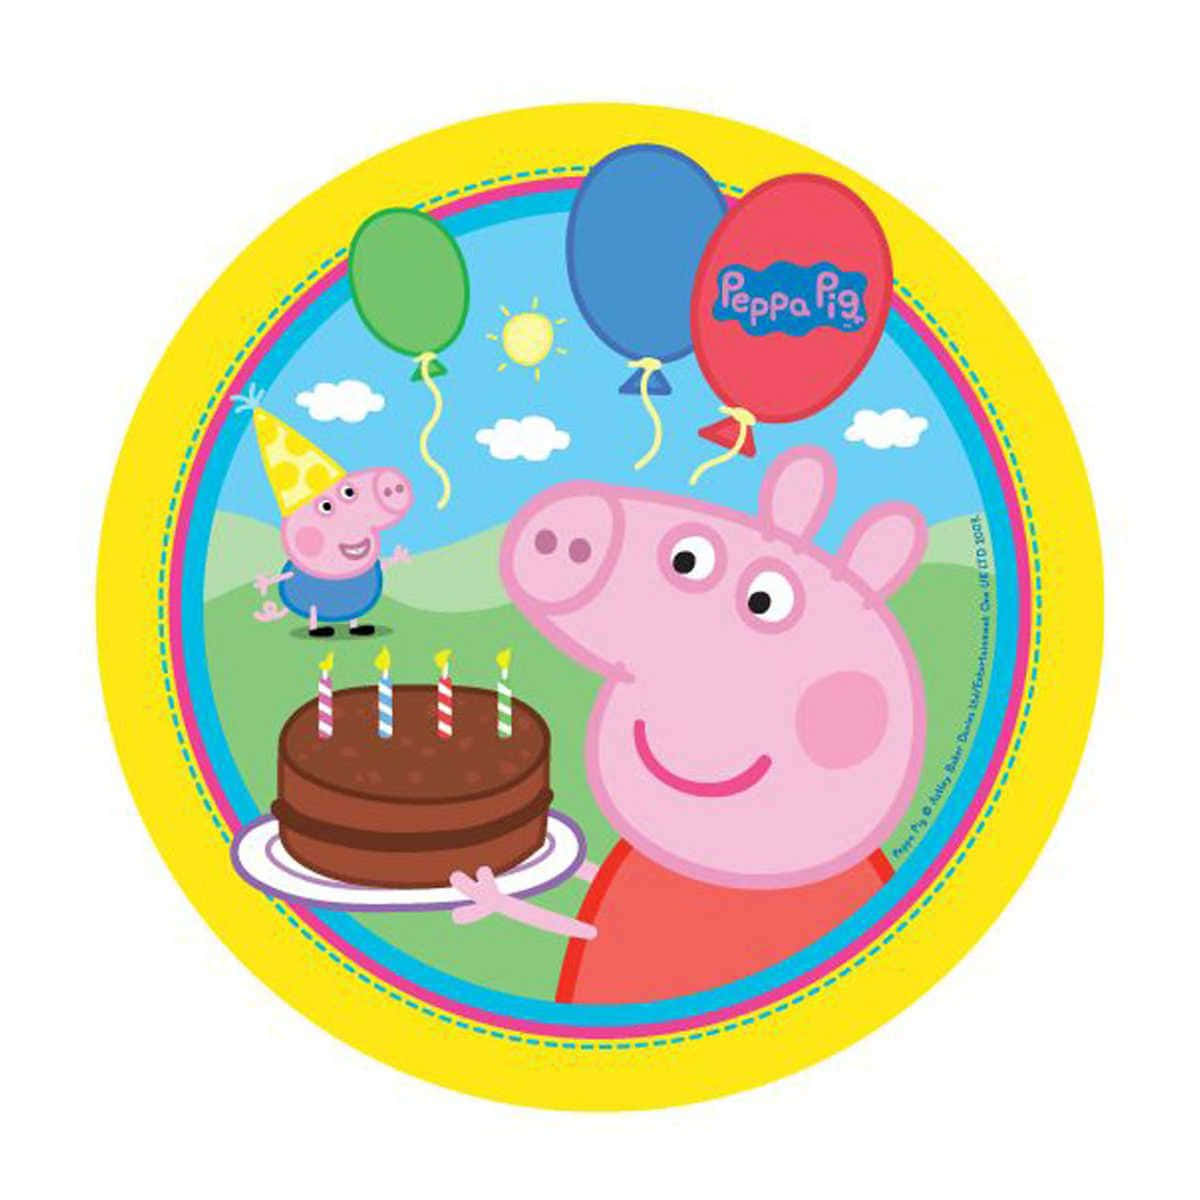 Fondode Pantalla De Peppa Pig Con Temática De Fiesta De Cumpleaños.